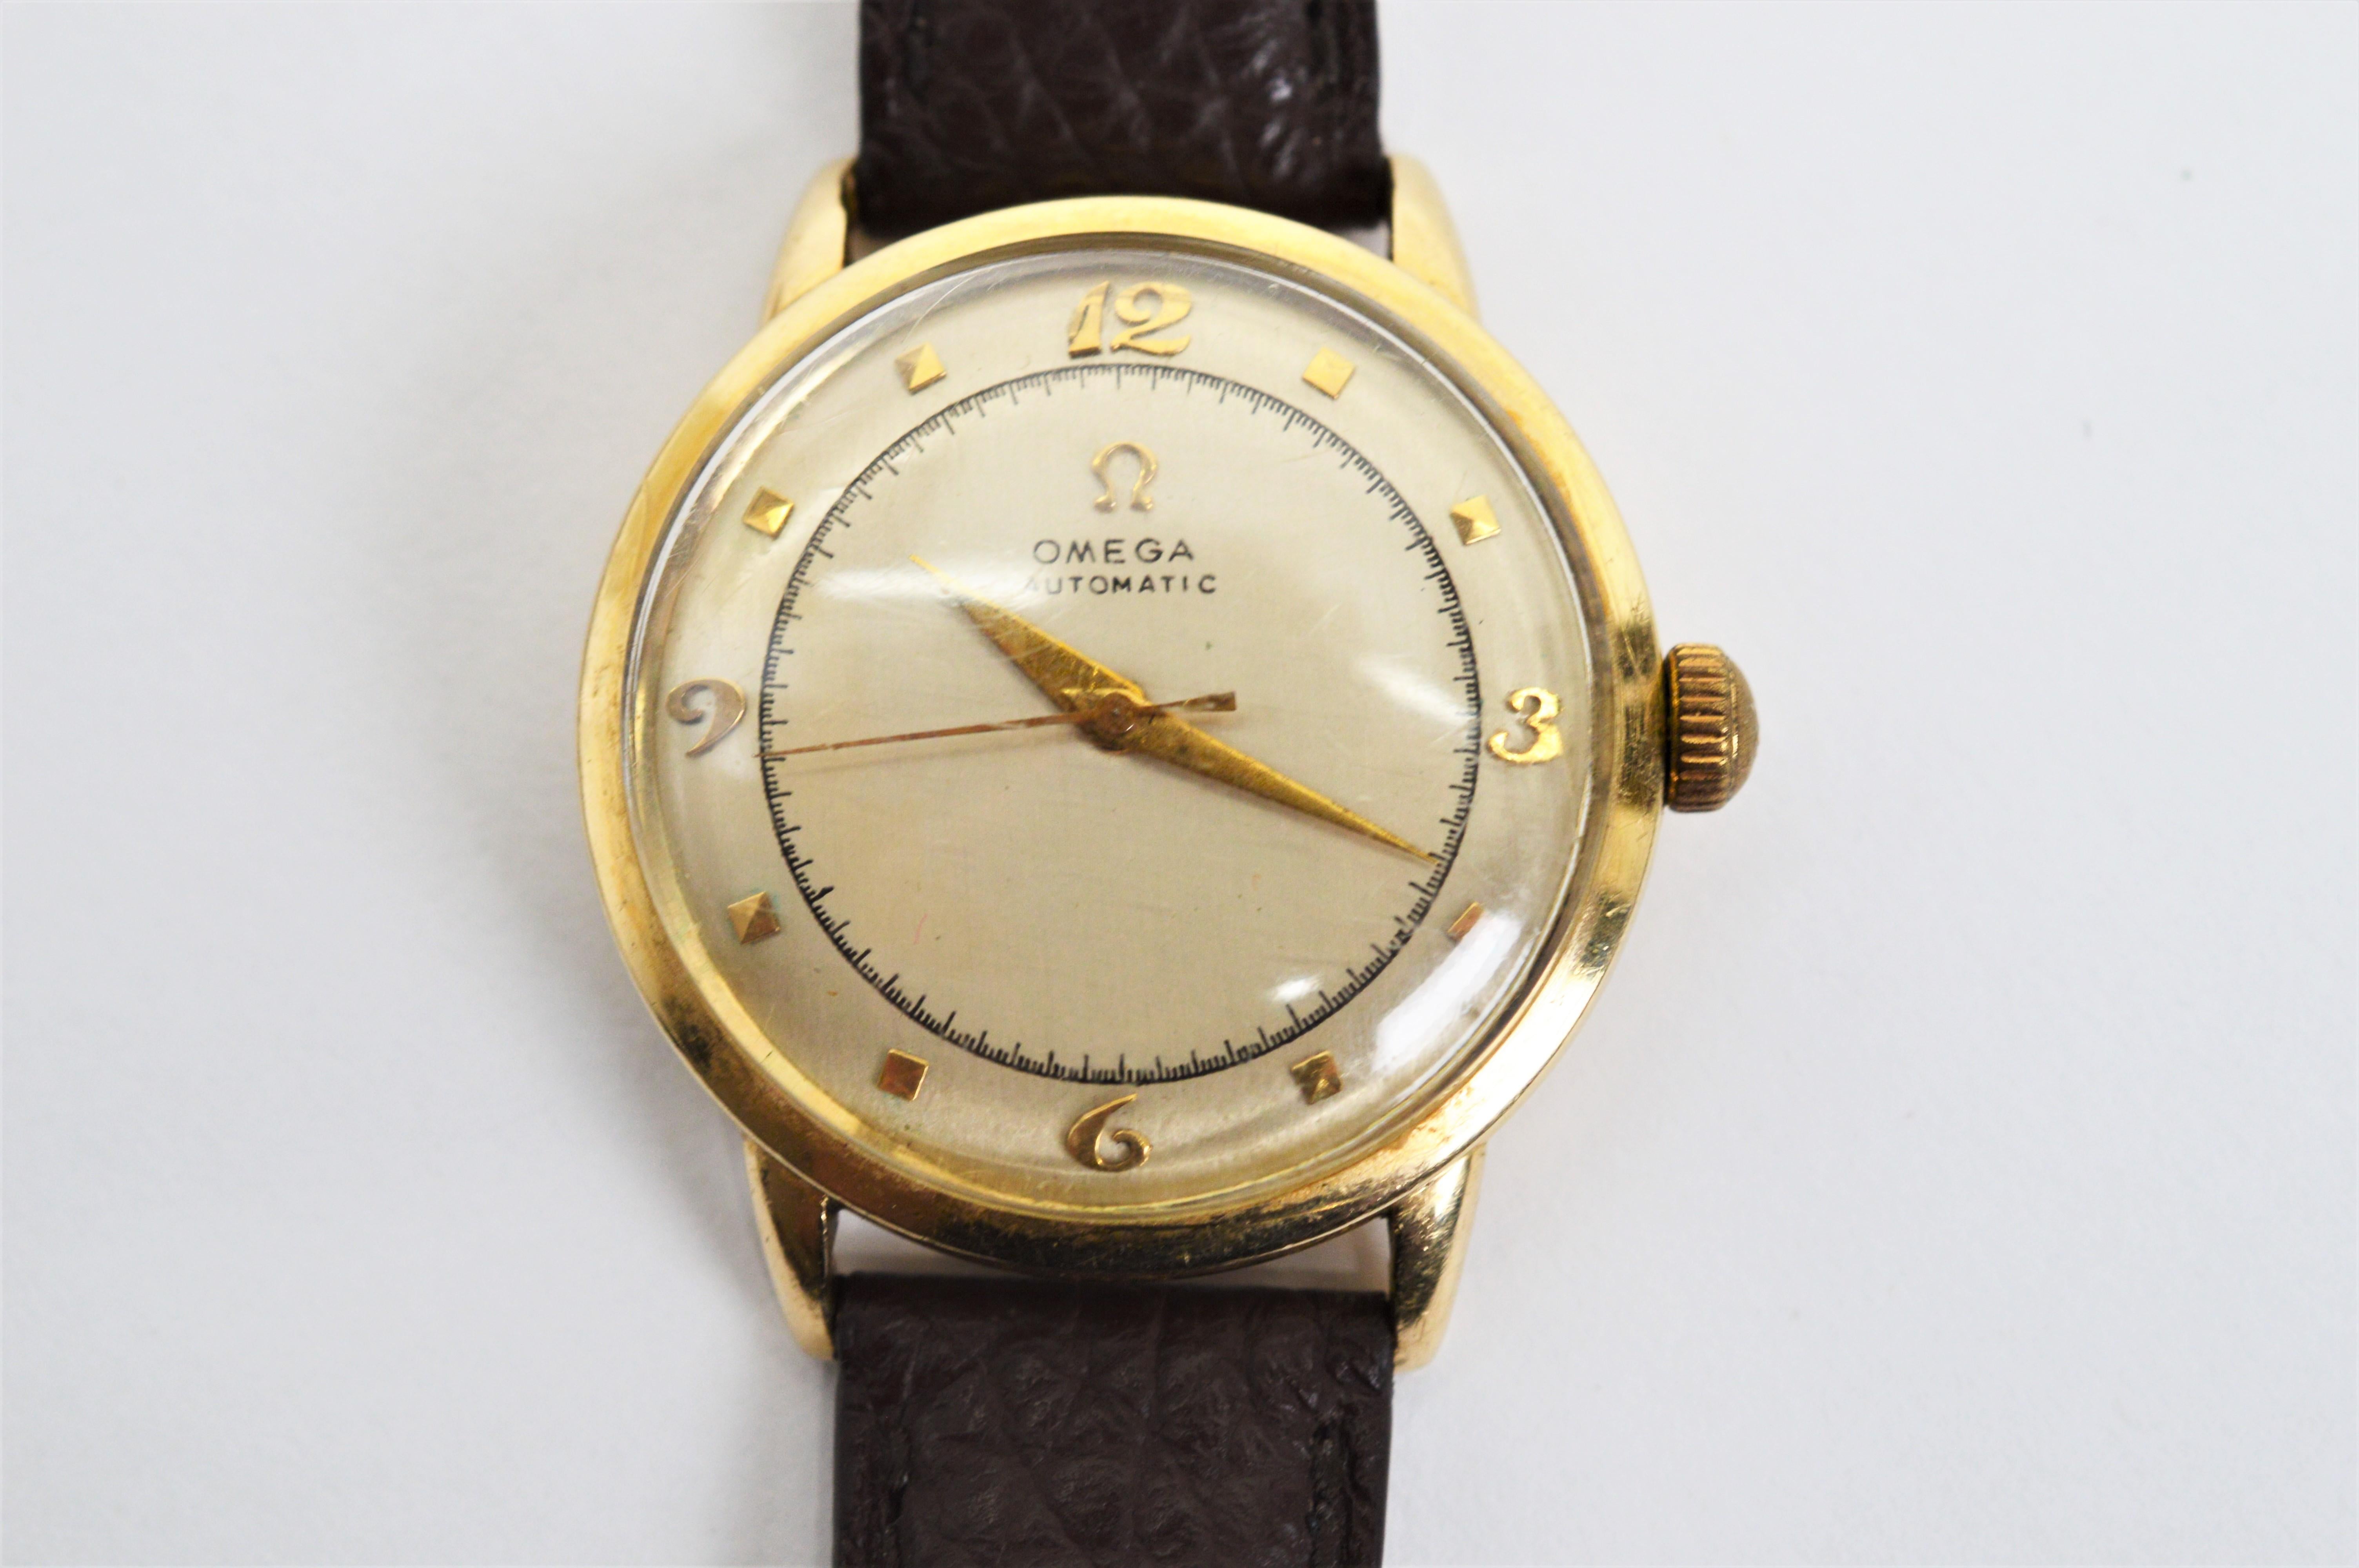 Mit dem beliebten 32-mm-Gehäuse der damaligen Zeit ist diese großartige Omega-Uhr aus den 1950er Jahren ein echter Gewinner.  Das gewölbte Glas und das authentische Retro-Zifferblatt mit den abgerundeten Ziffern und der zweiten Wählscheibe sind das